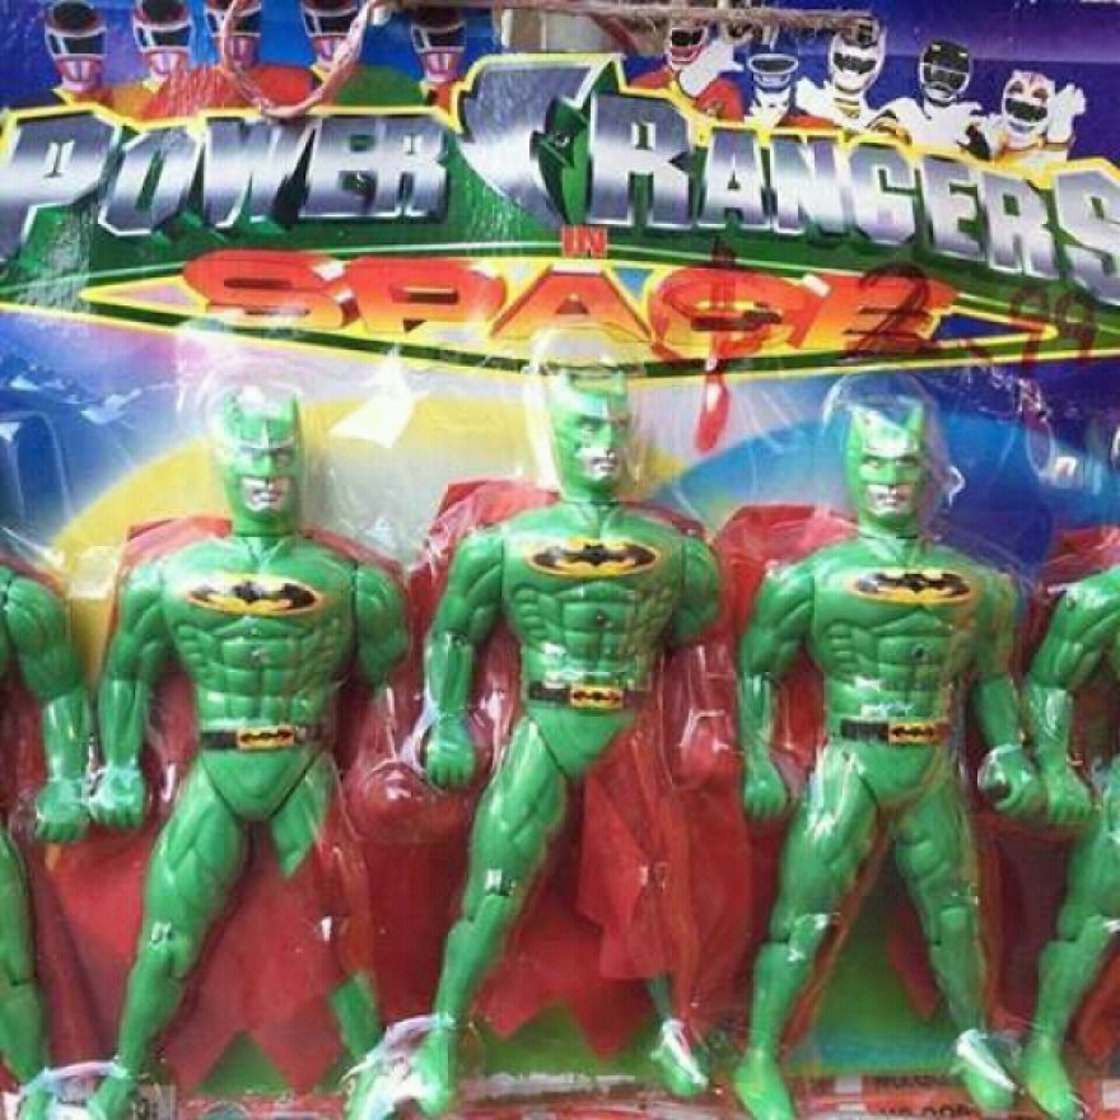 Power rangers toys that looks like strange green batmen.